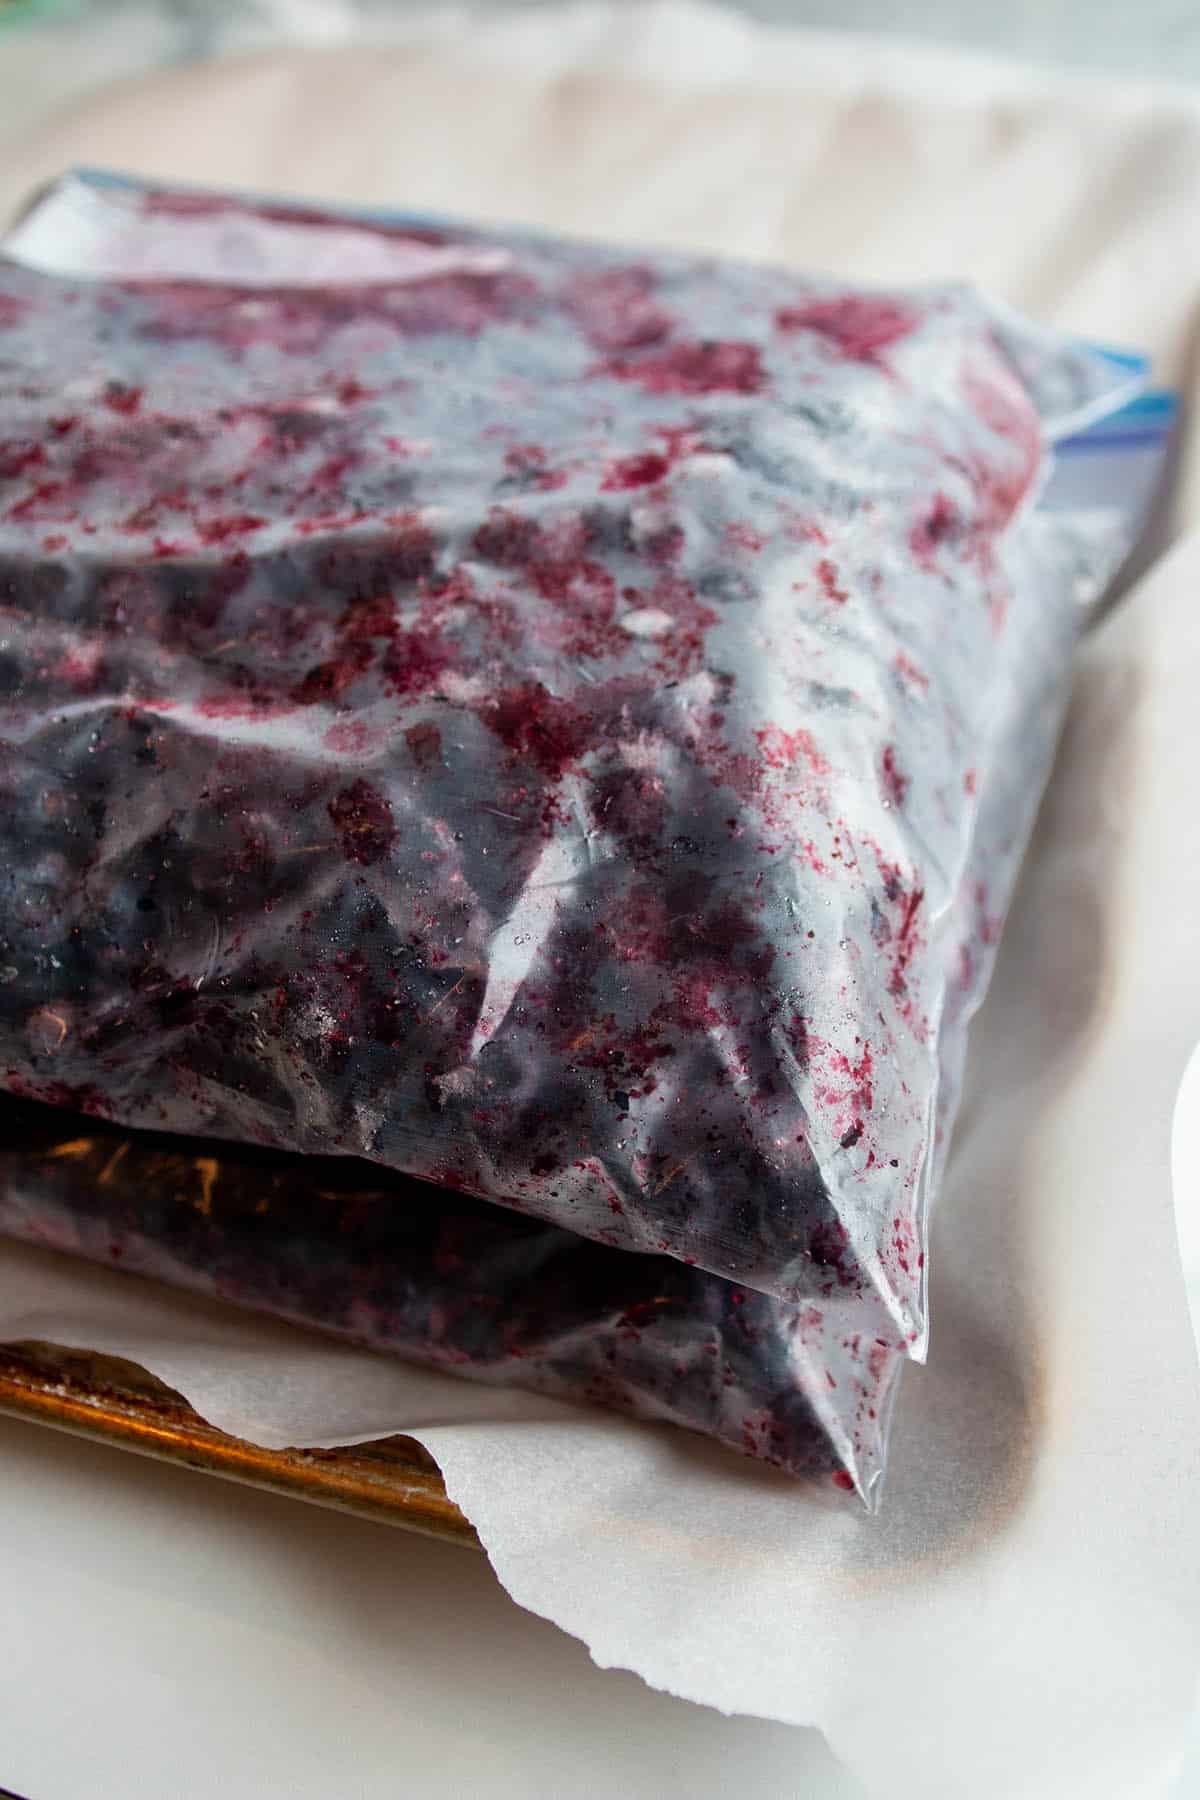 Gallon Ziplock bags with frozen blueberries.